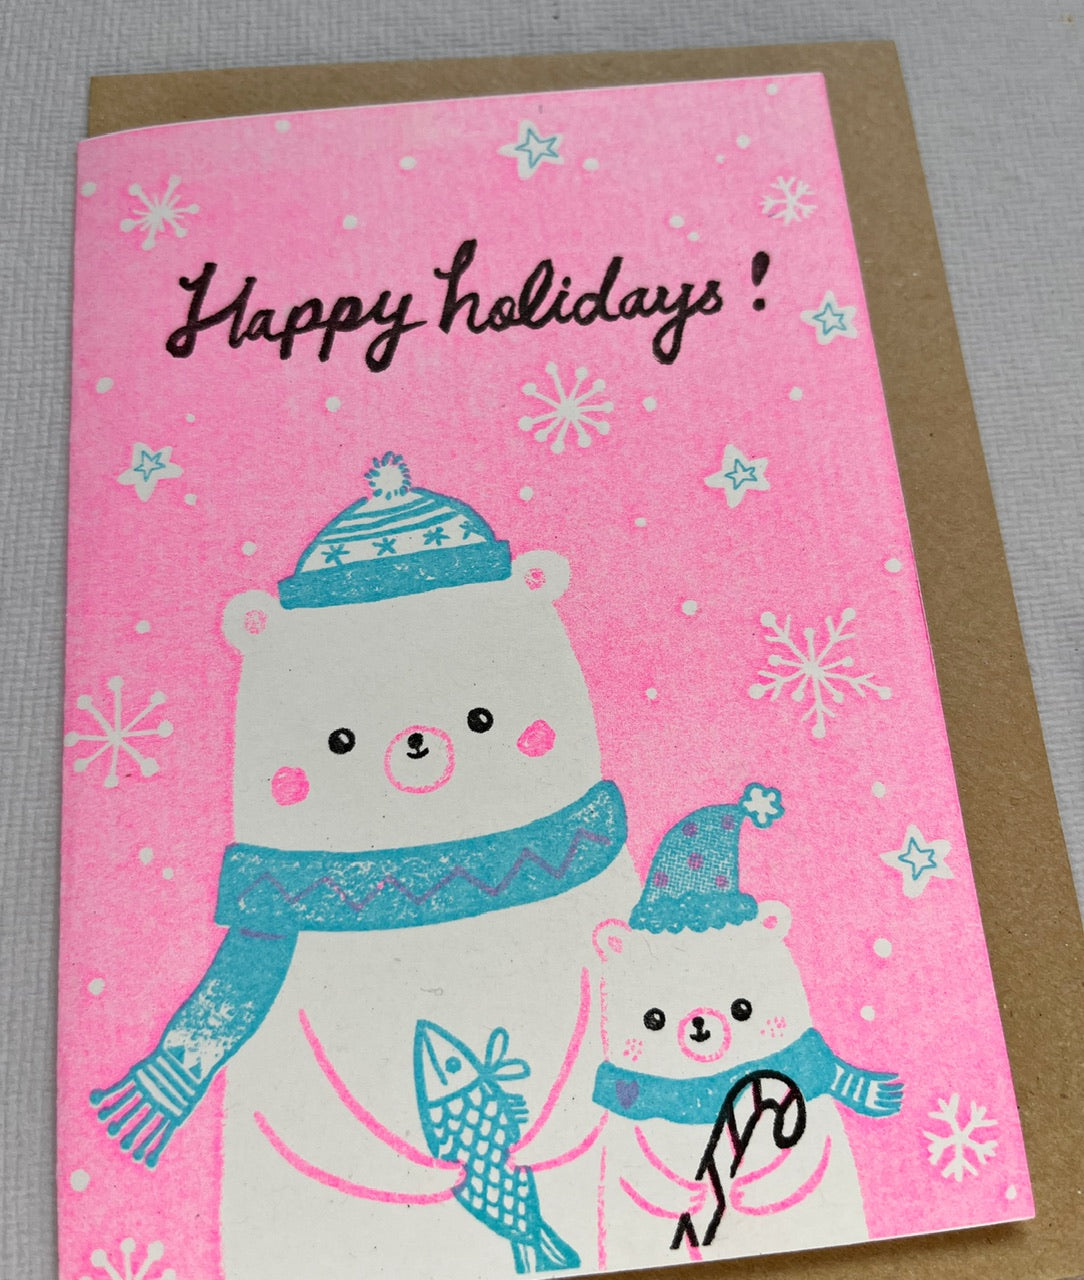 Happy Holiday Polar bears - A6 risograph happy holidays Card